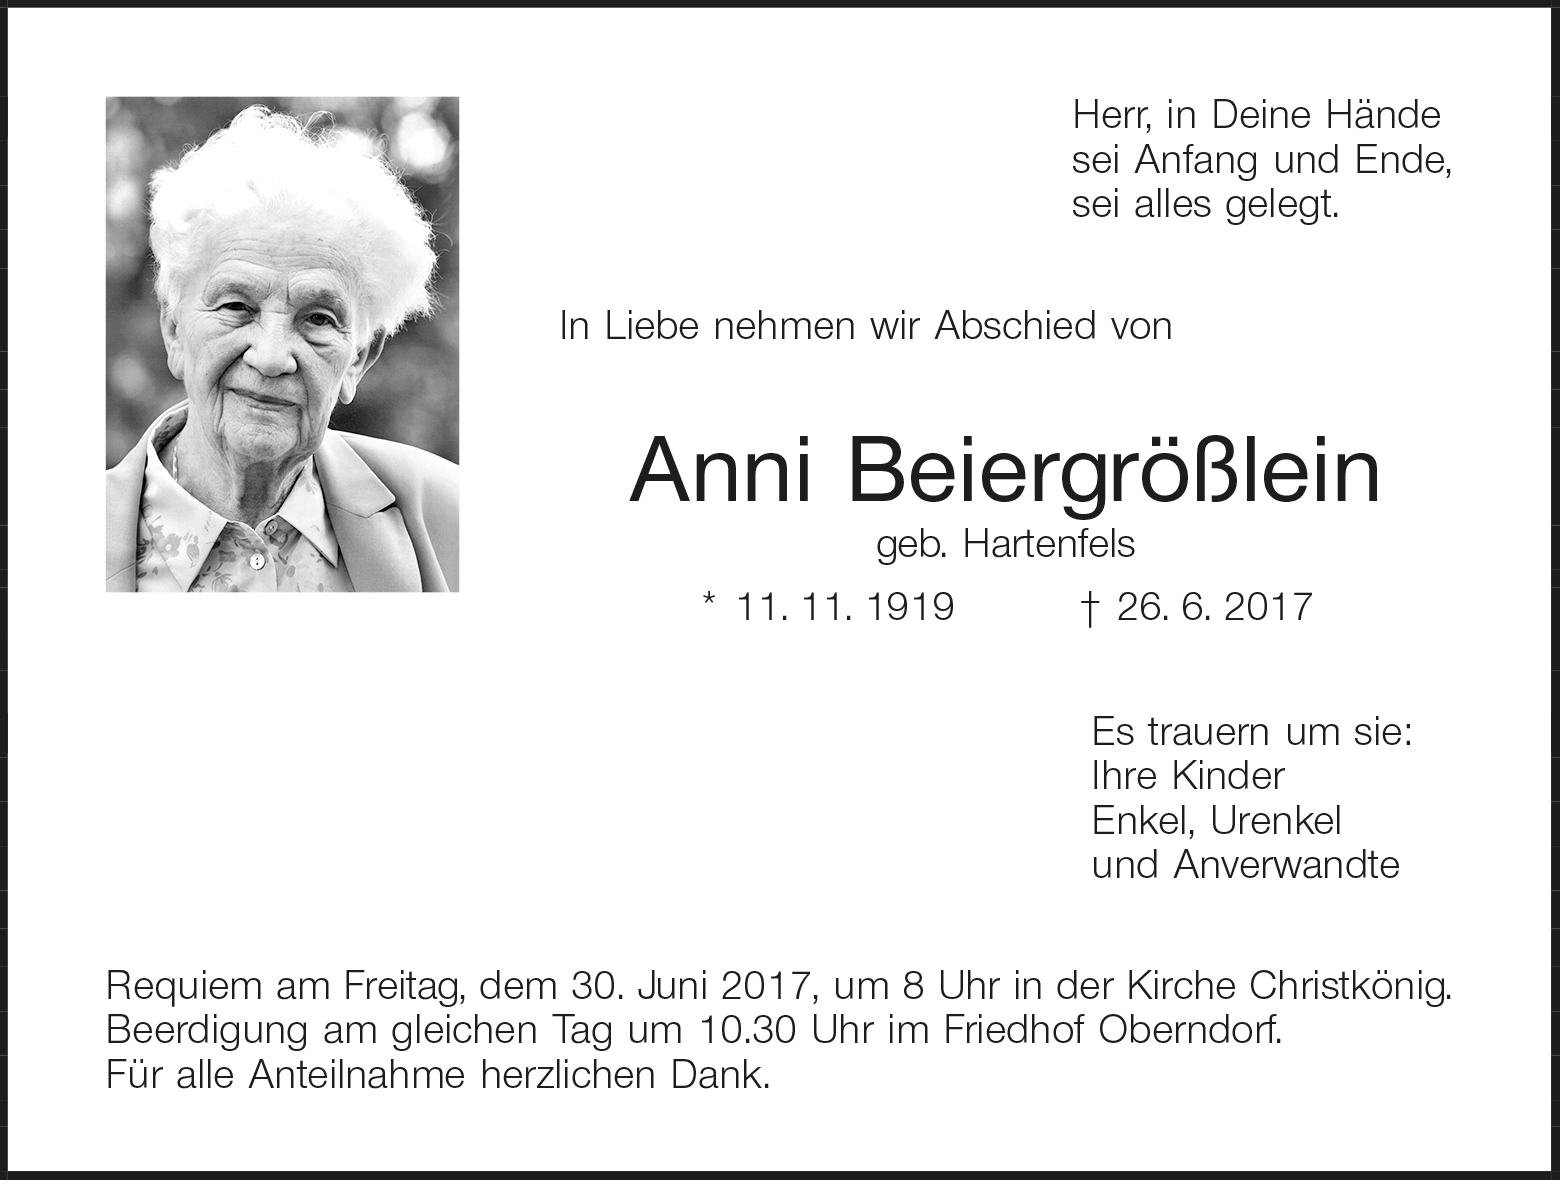 Anni Beiergrößlein